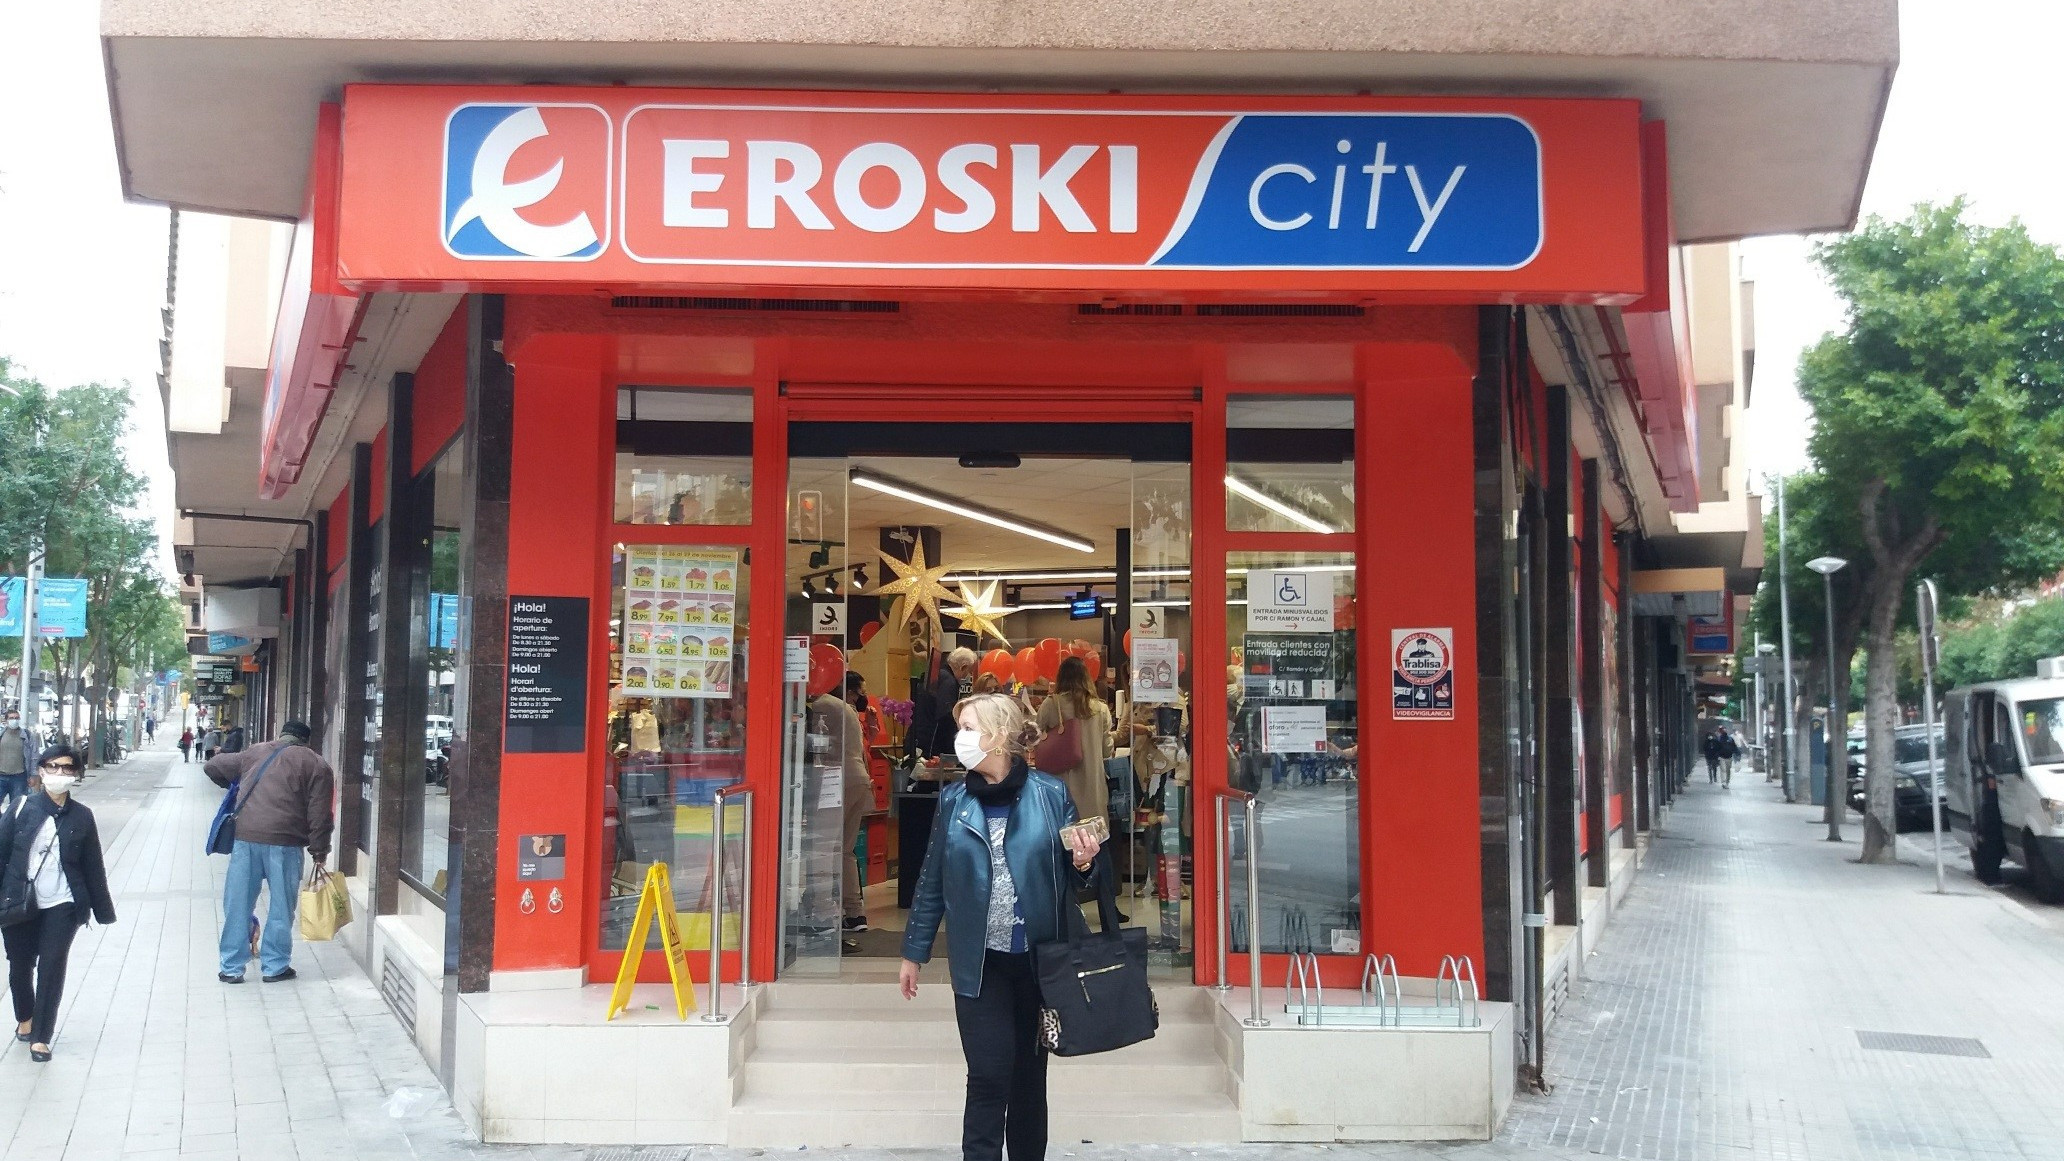 Eroski espera reducir su deuda por debajo de los 1.000 millones tras la entrada del magnate checo